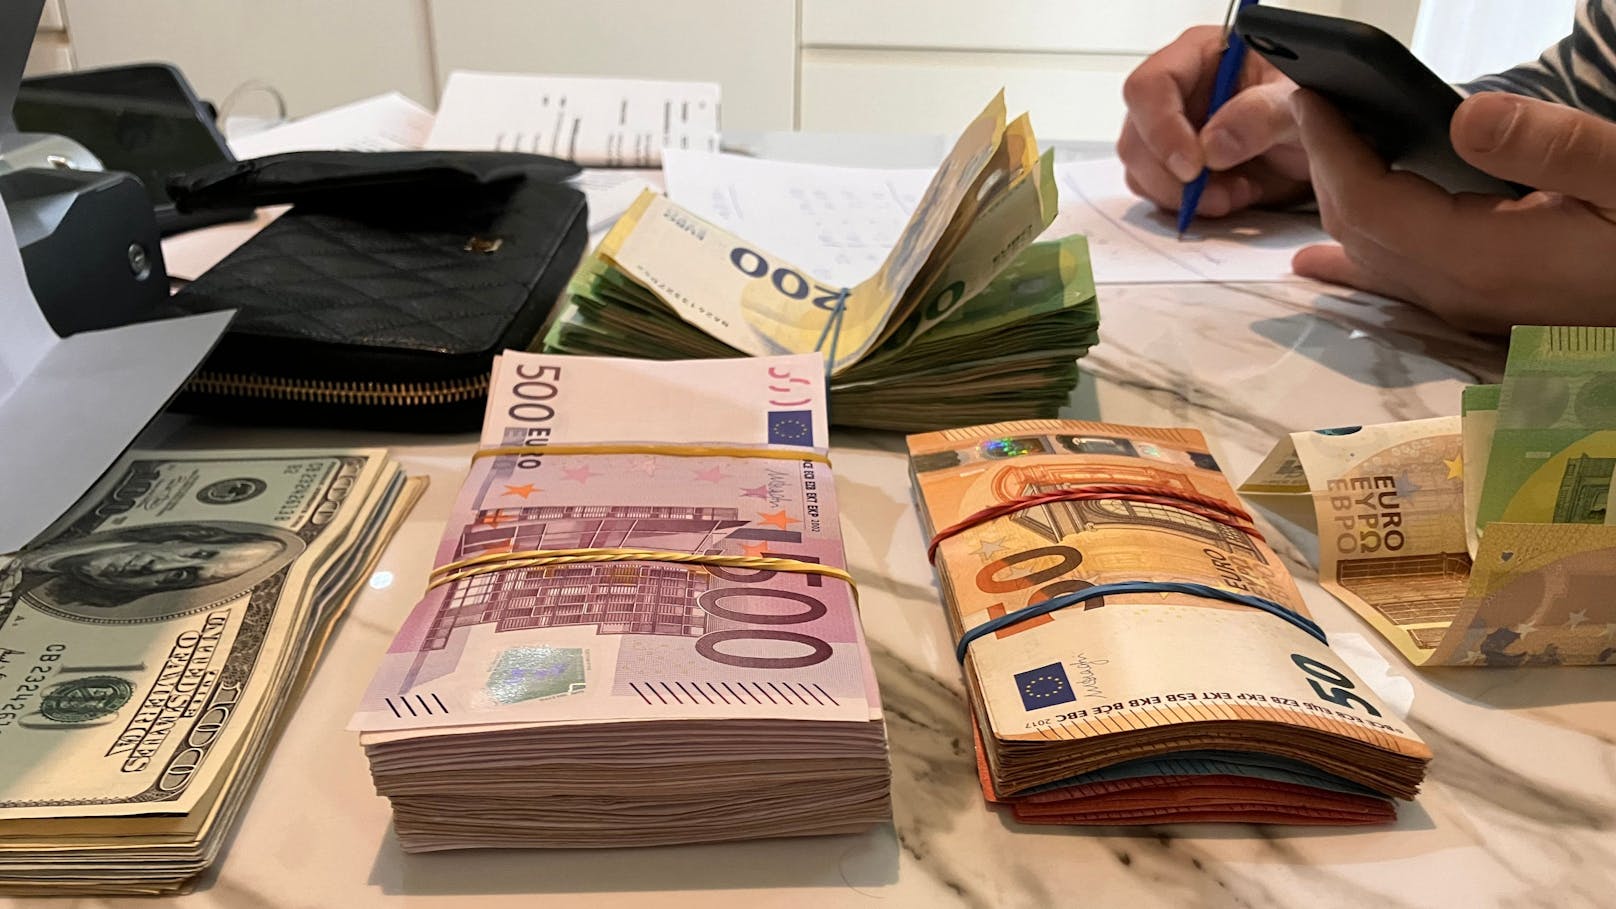 195 Millionen Euro! Betrug mit Corona-Masken aufgedeckt